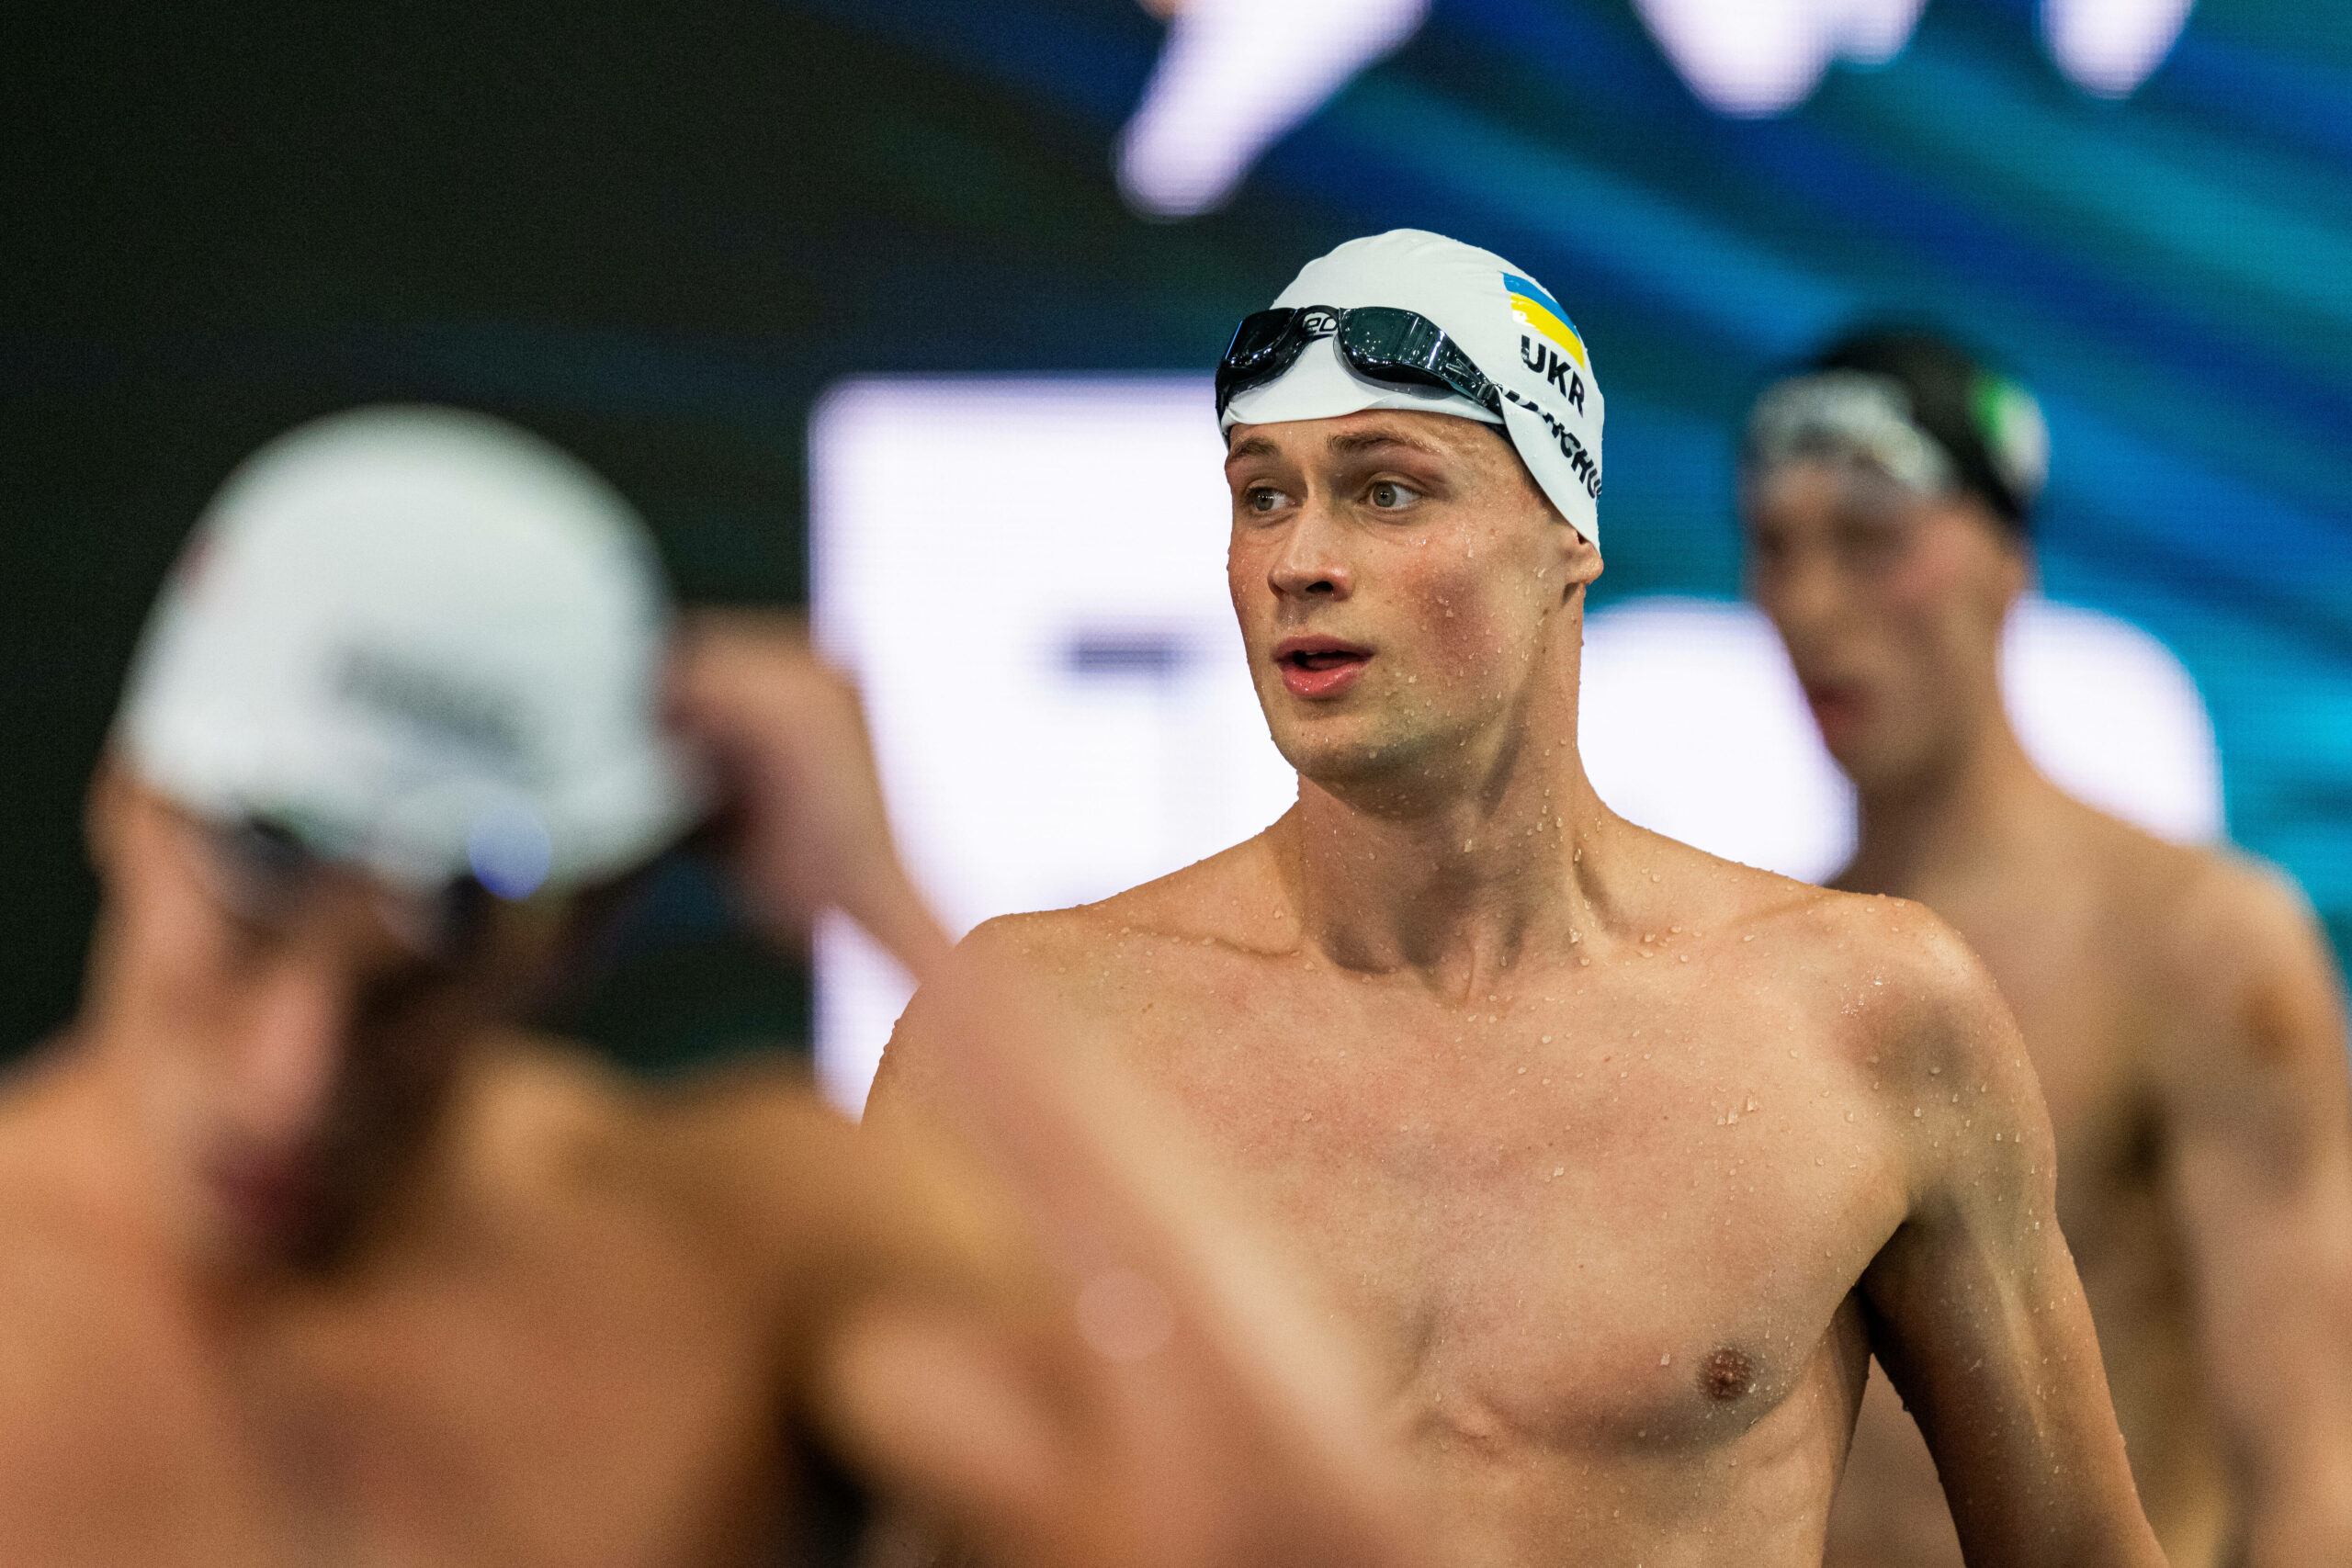 Der ukrainische Schwimmer Mykhailo Romanchuk sieht bei der WM in Ungarn seine Familie nach vier Monaten wieder.